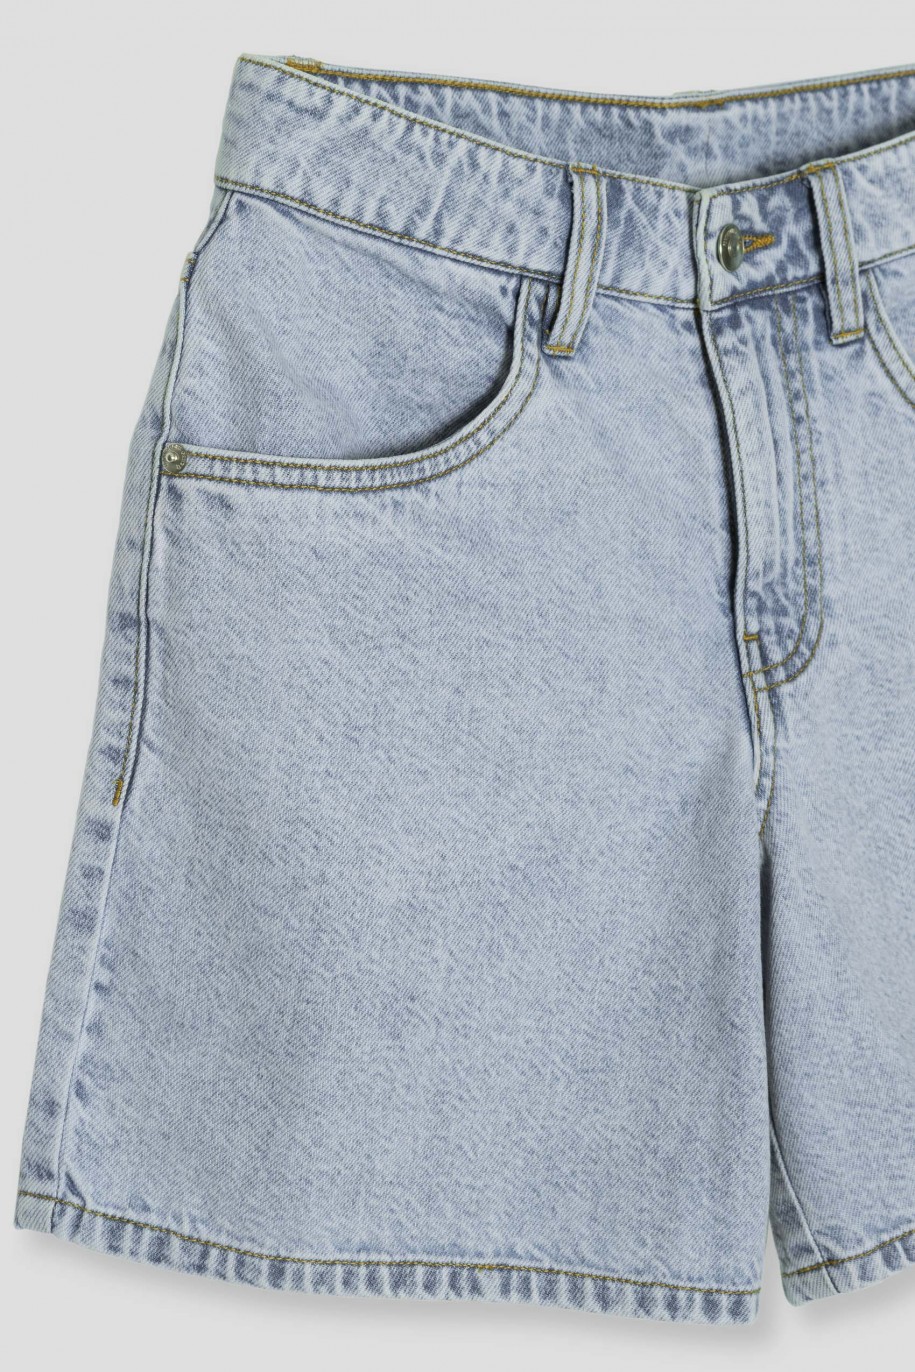 Niebieskie jeansowe proste krótkie spodenki - 42150